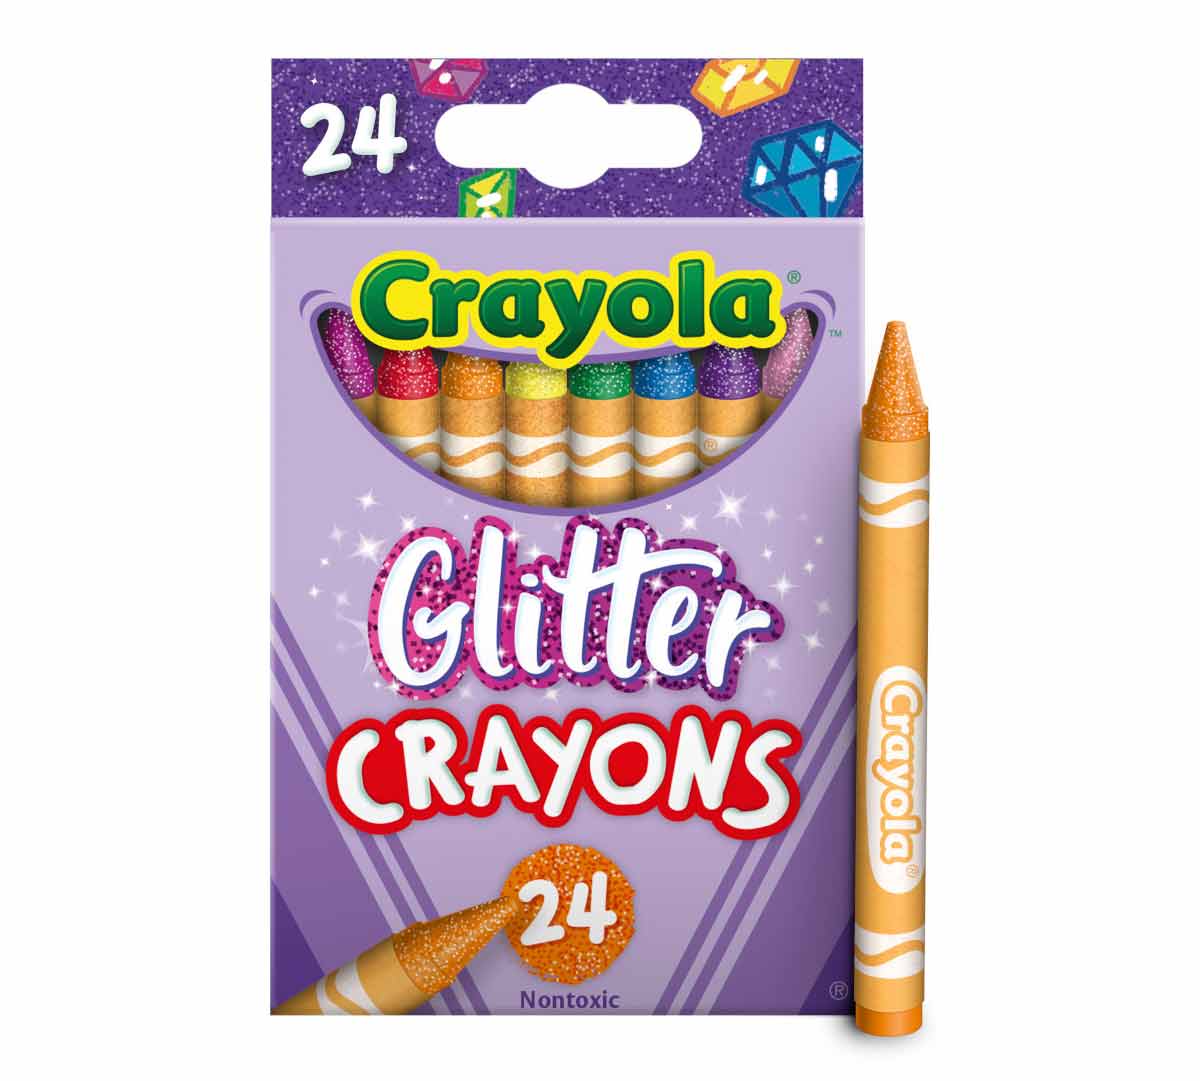 Glitter Crayons, 24 Count Crayola Crayons, Crayola.com